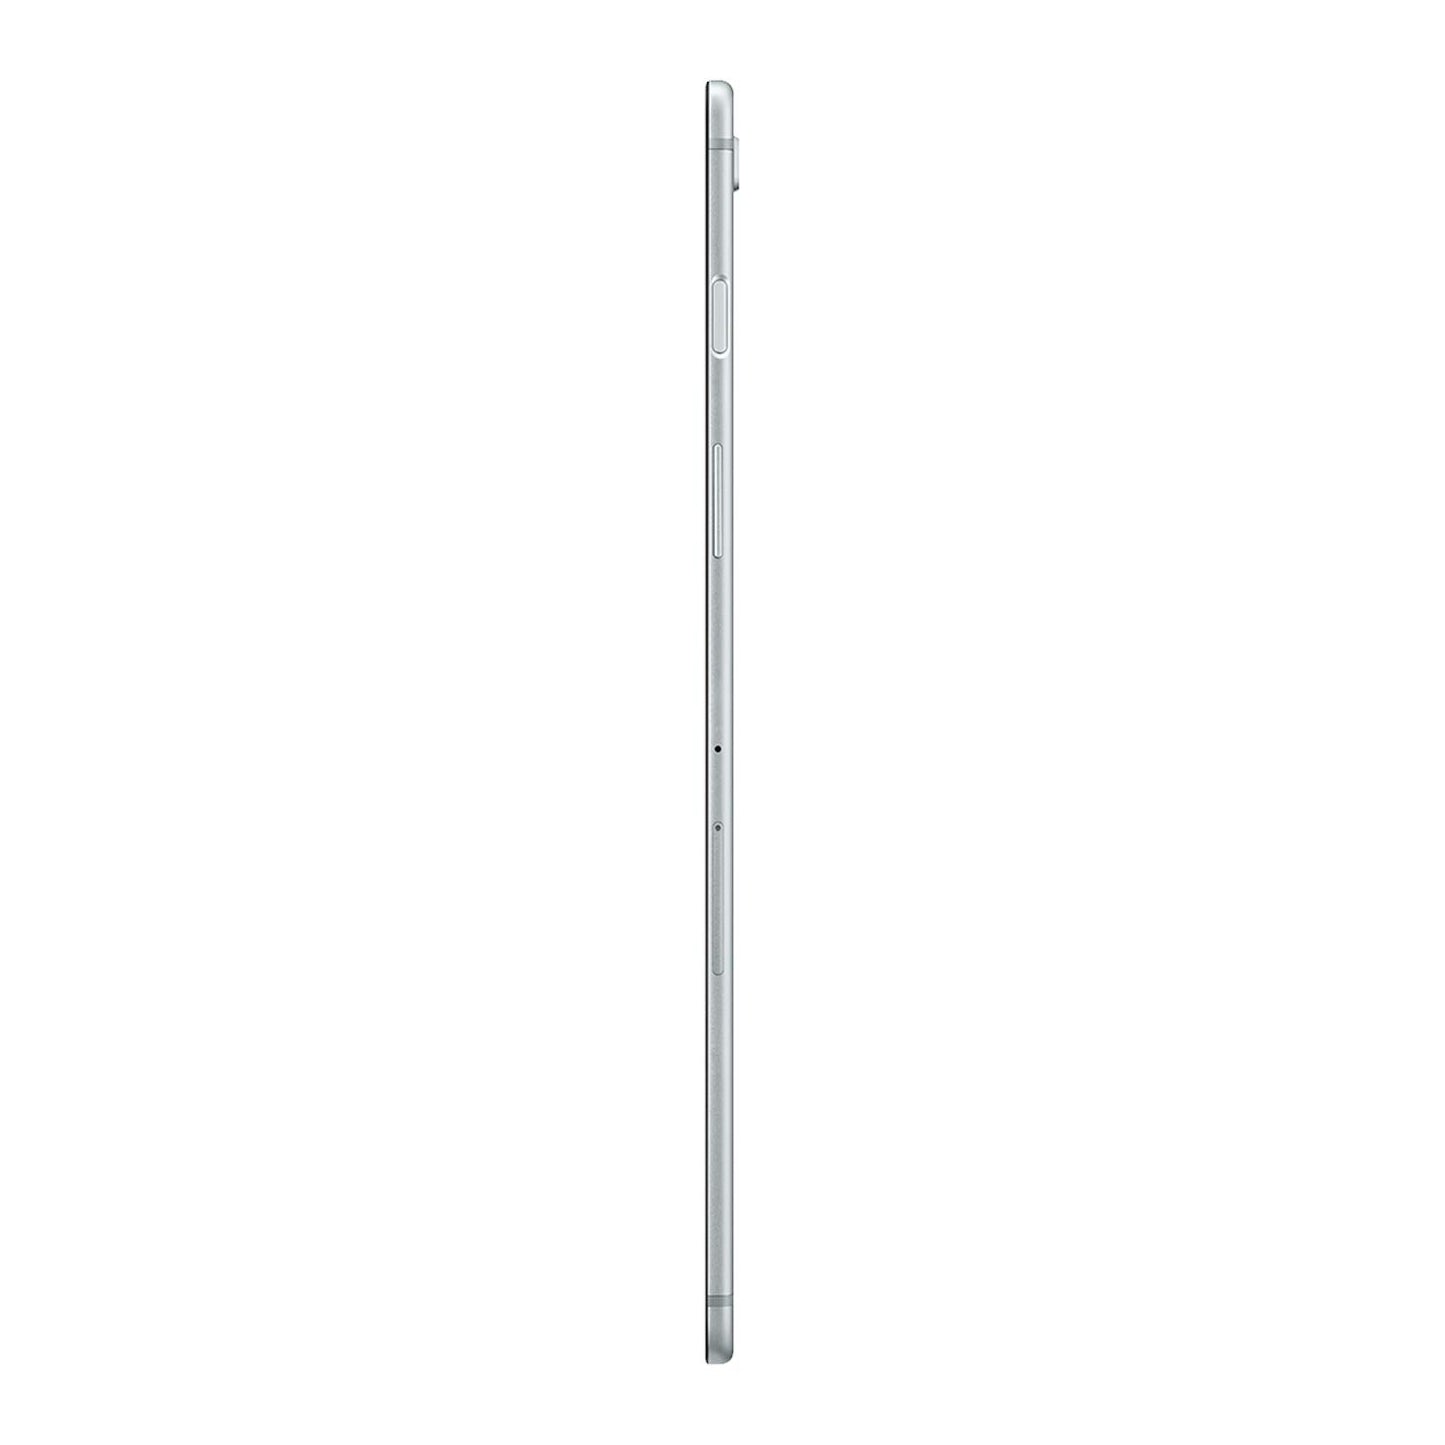 Samsung Galaxy Tab S5e 10.5-in Tablet 128 GB Silver - 2019